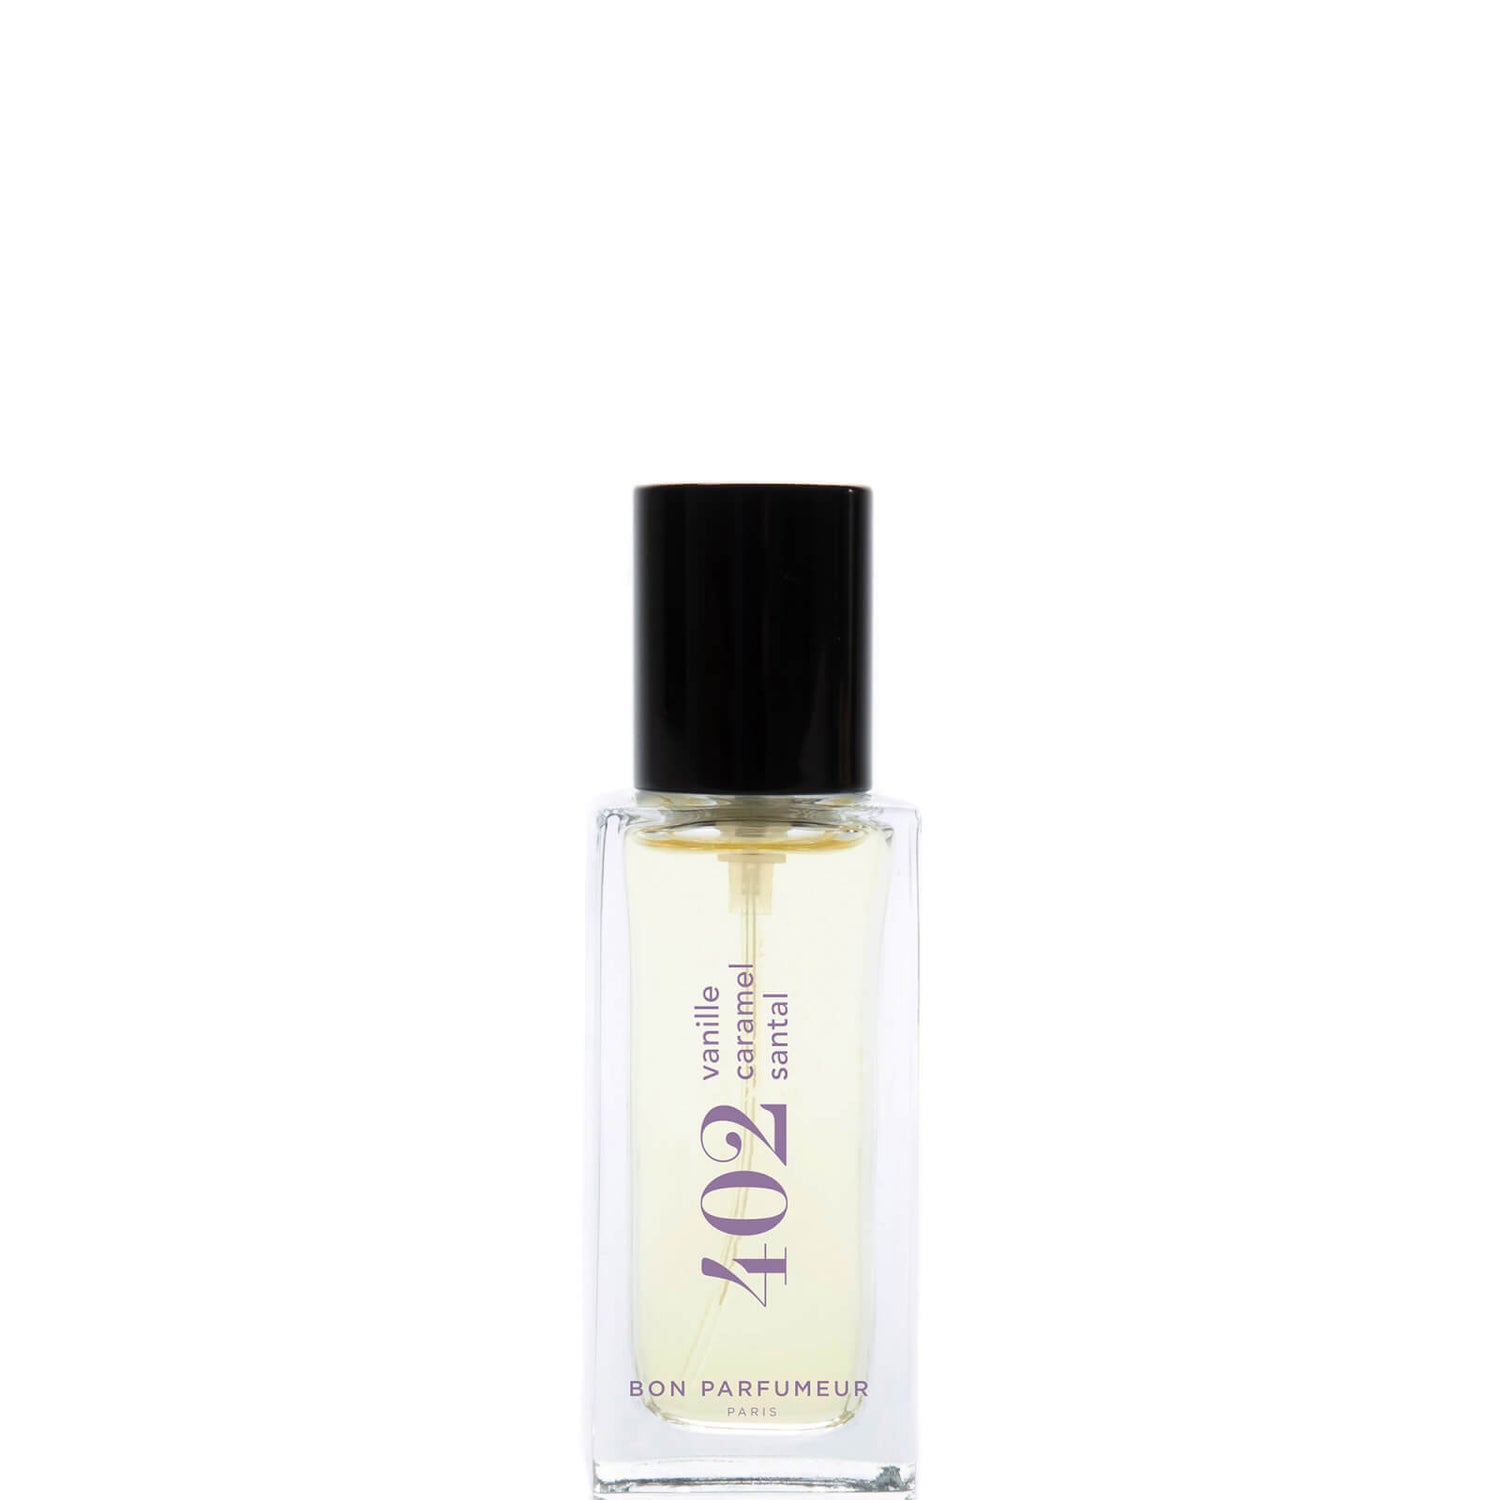 Bon Parfumeur 402 Vanille Toffee Sandelhout Eau de Parfum - 15ml